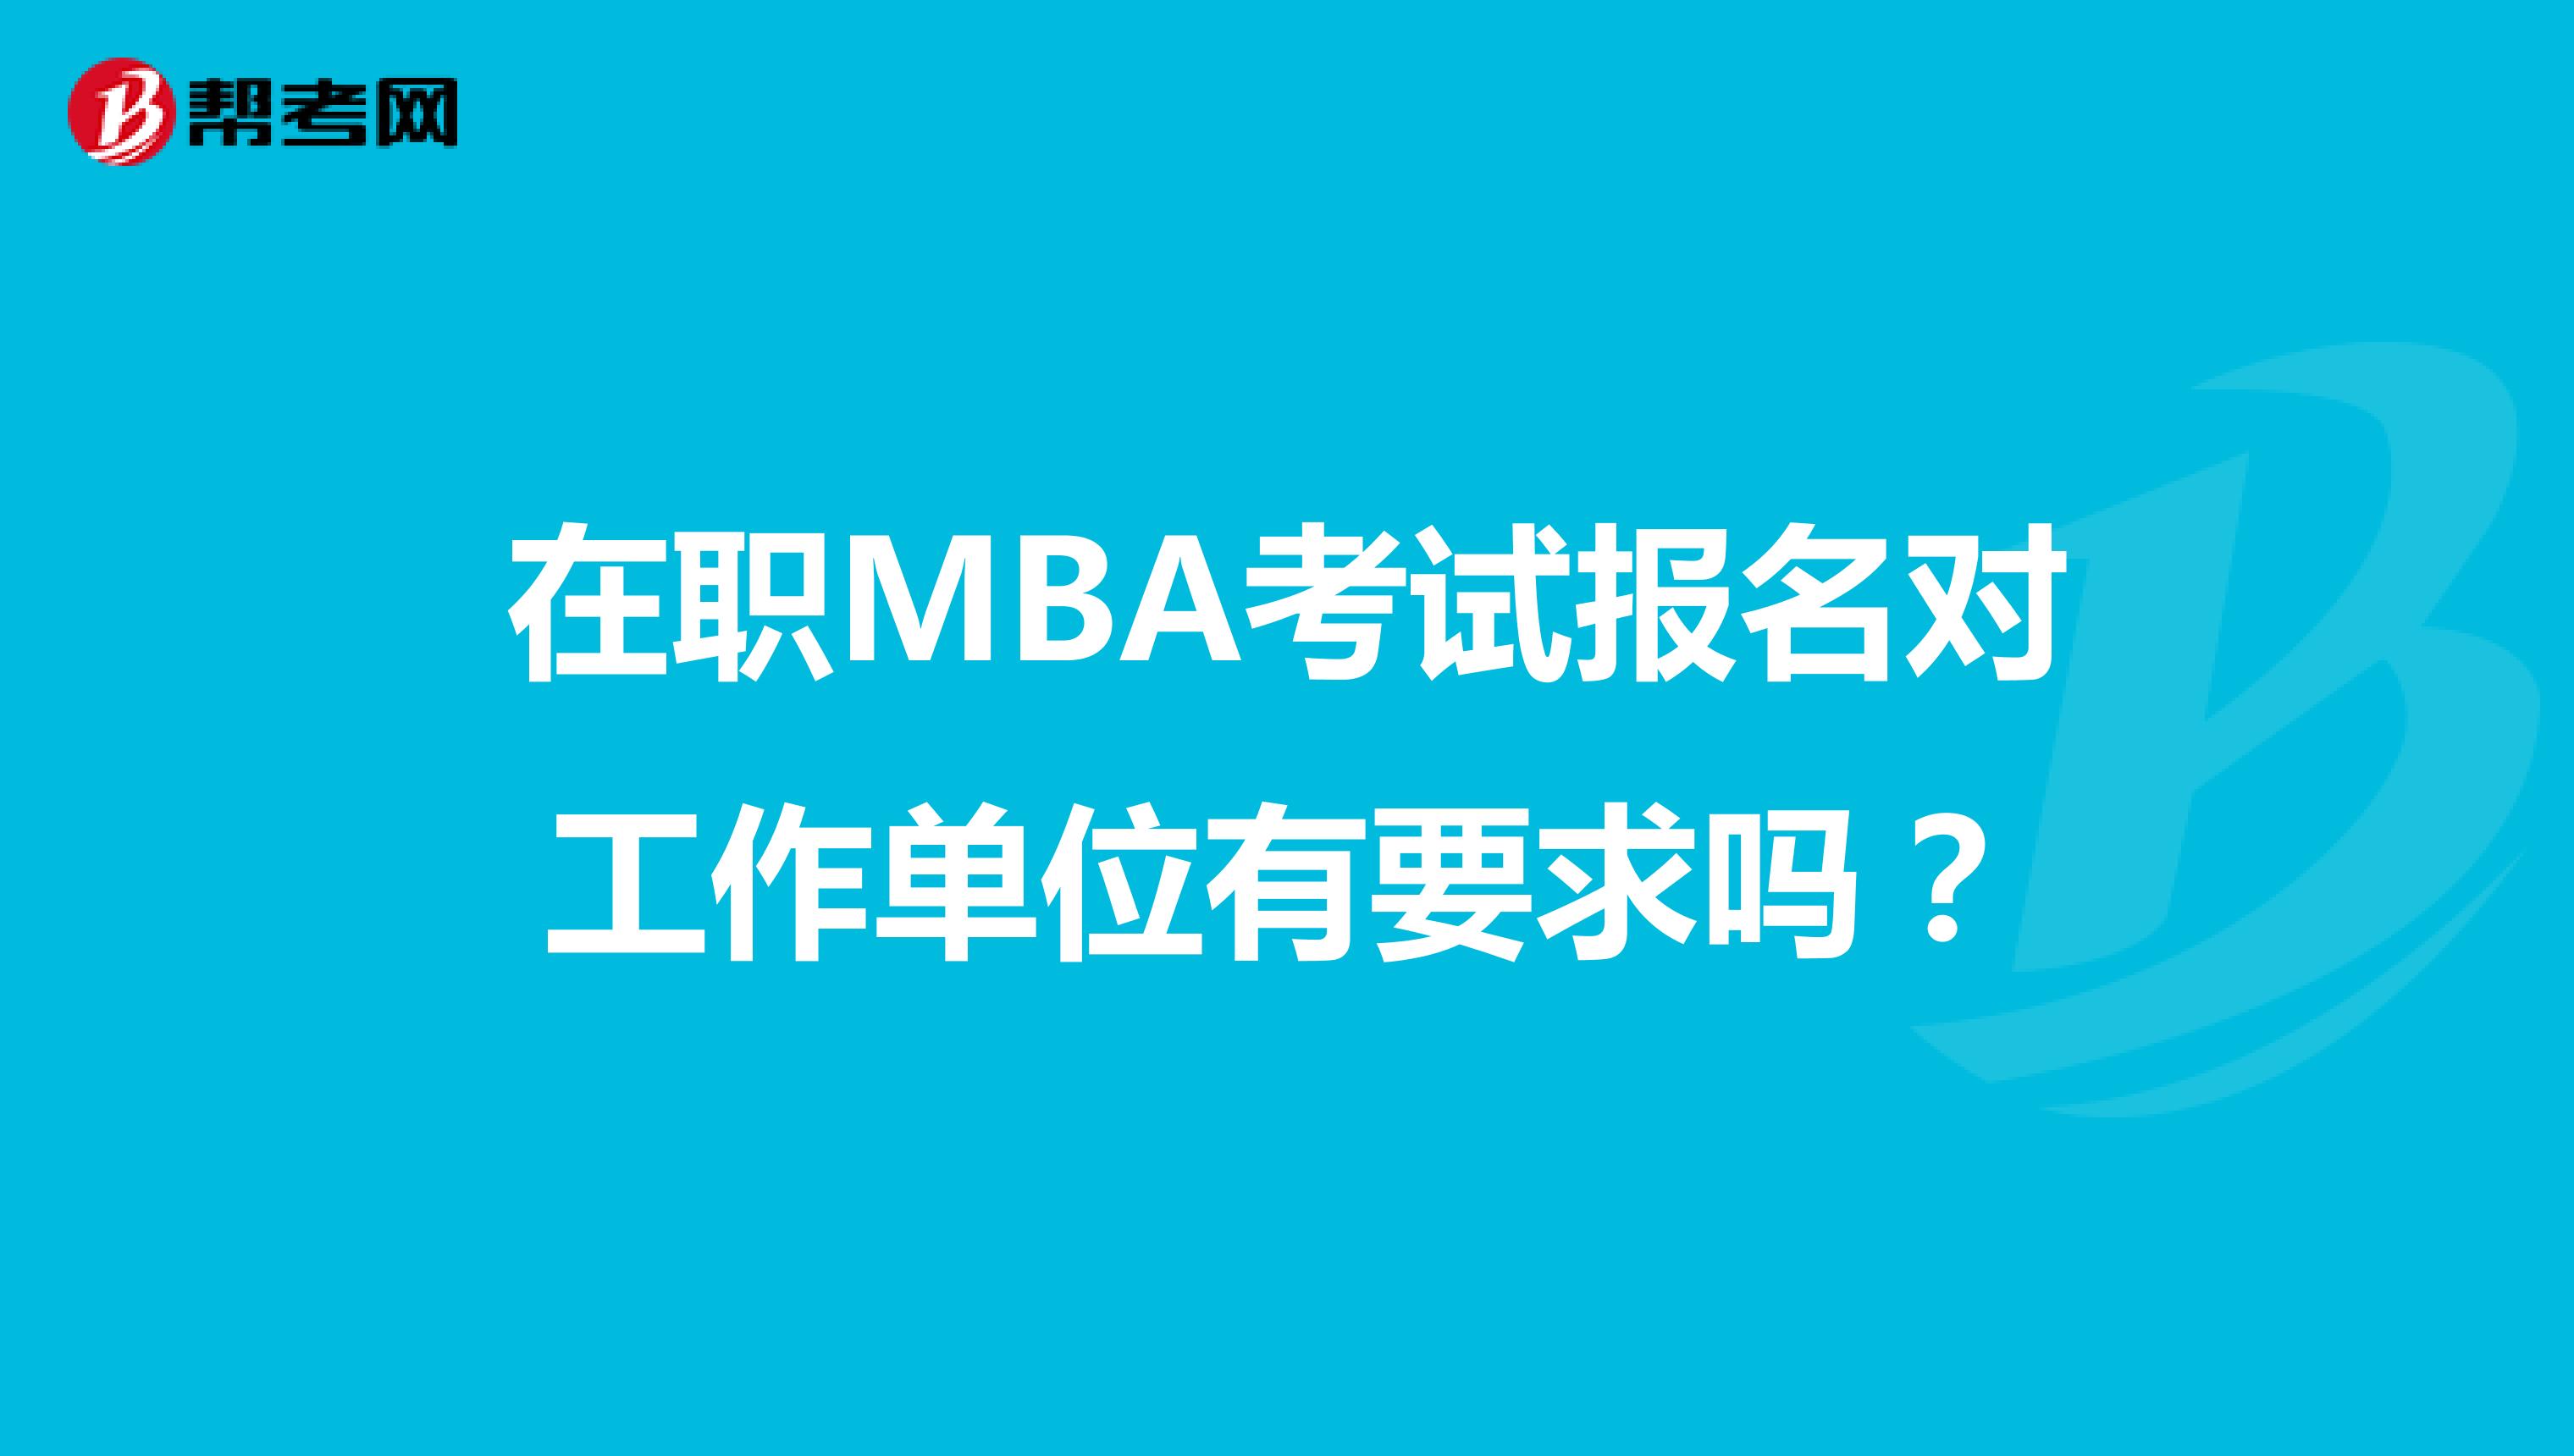 在职MBA考试报名对工作单位有要求吗？